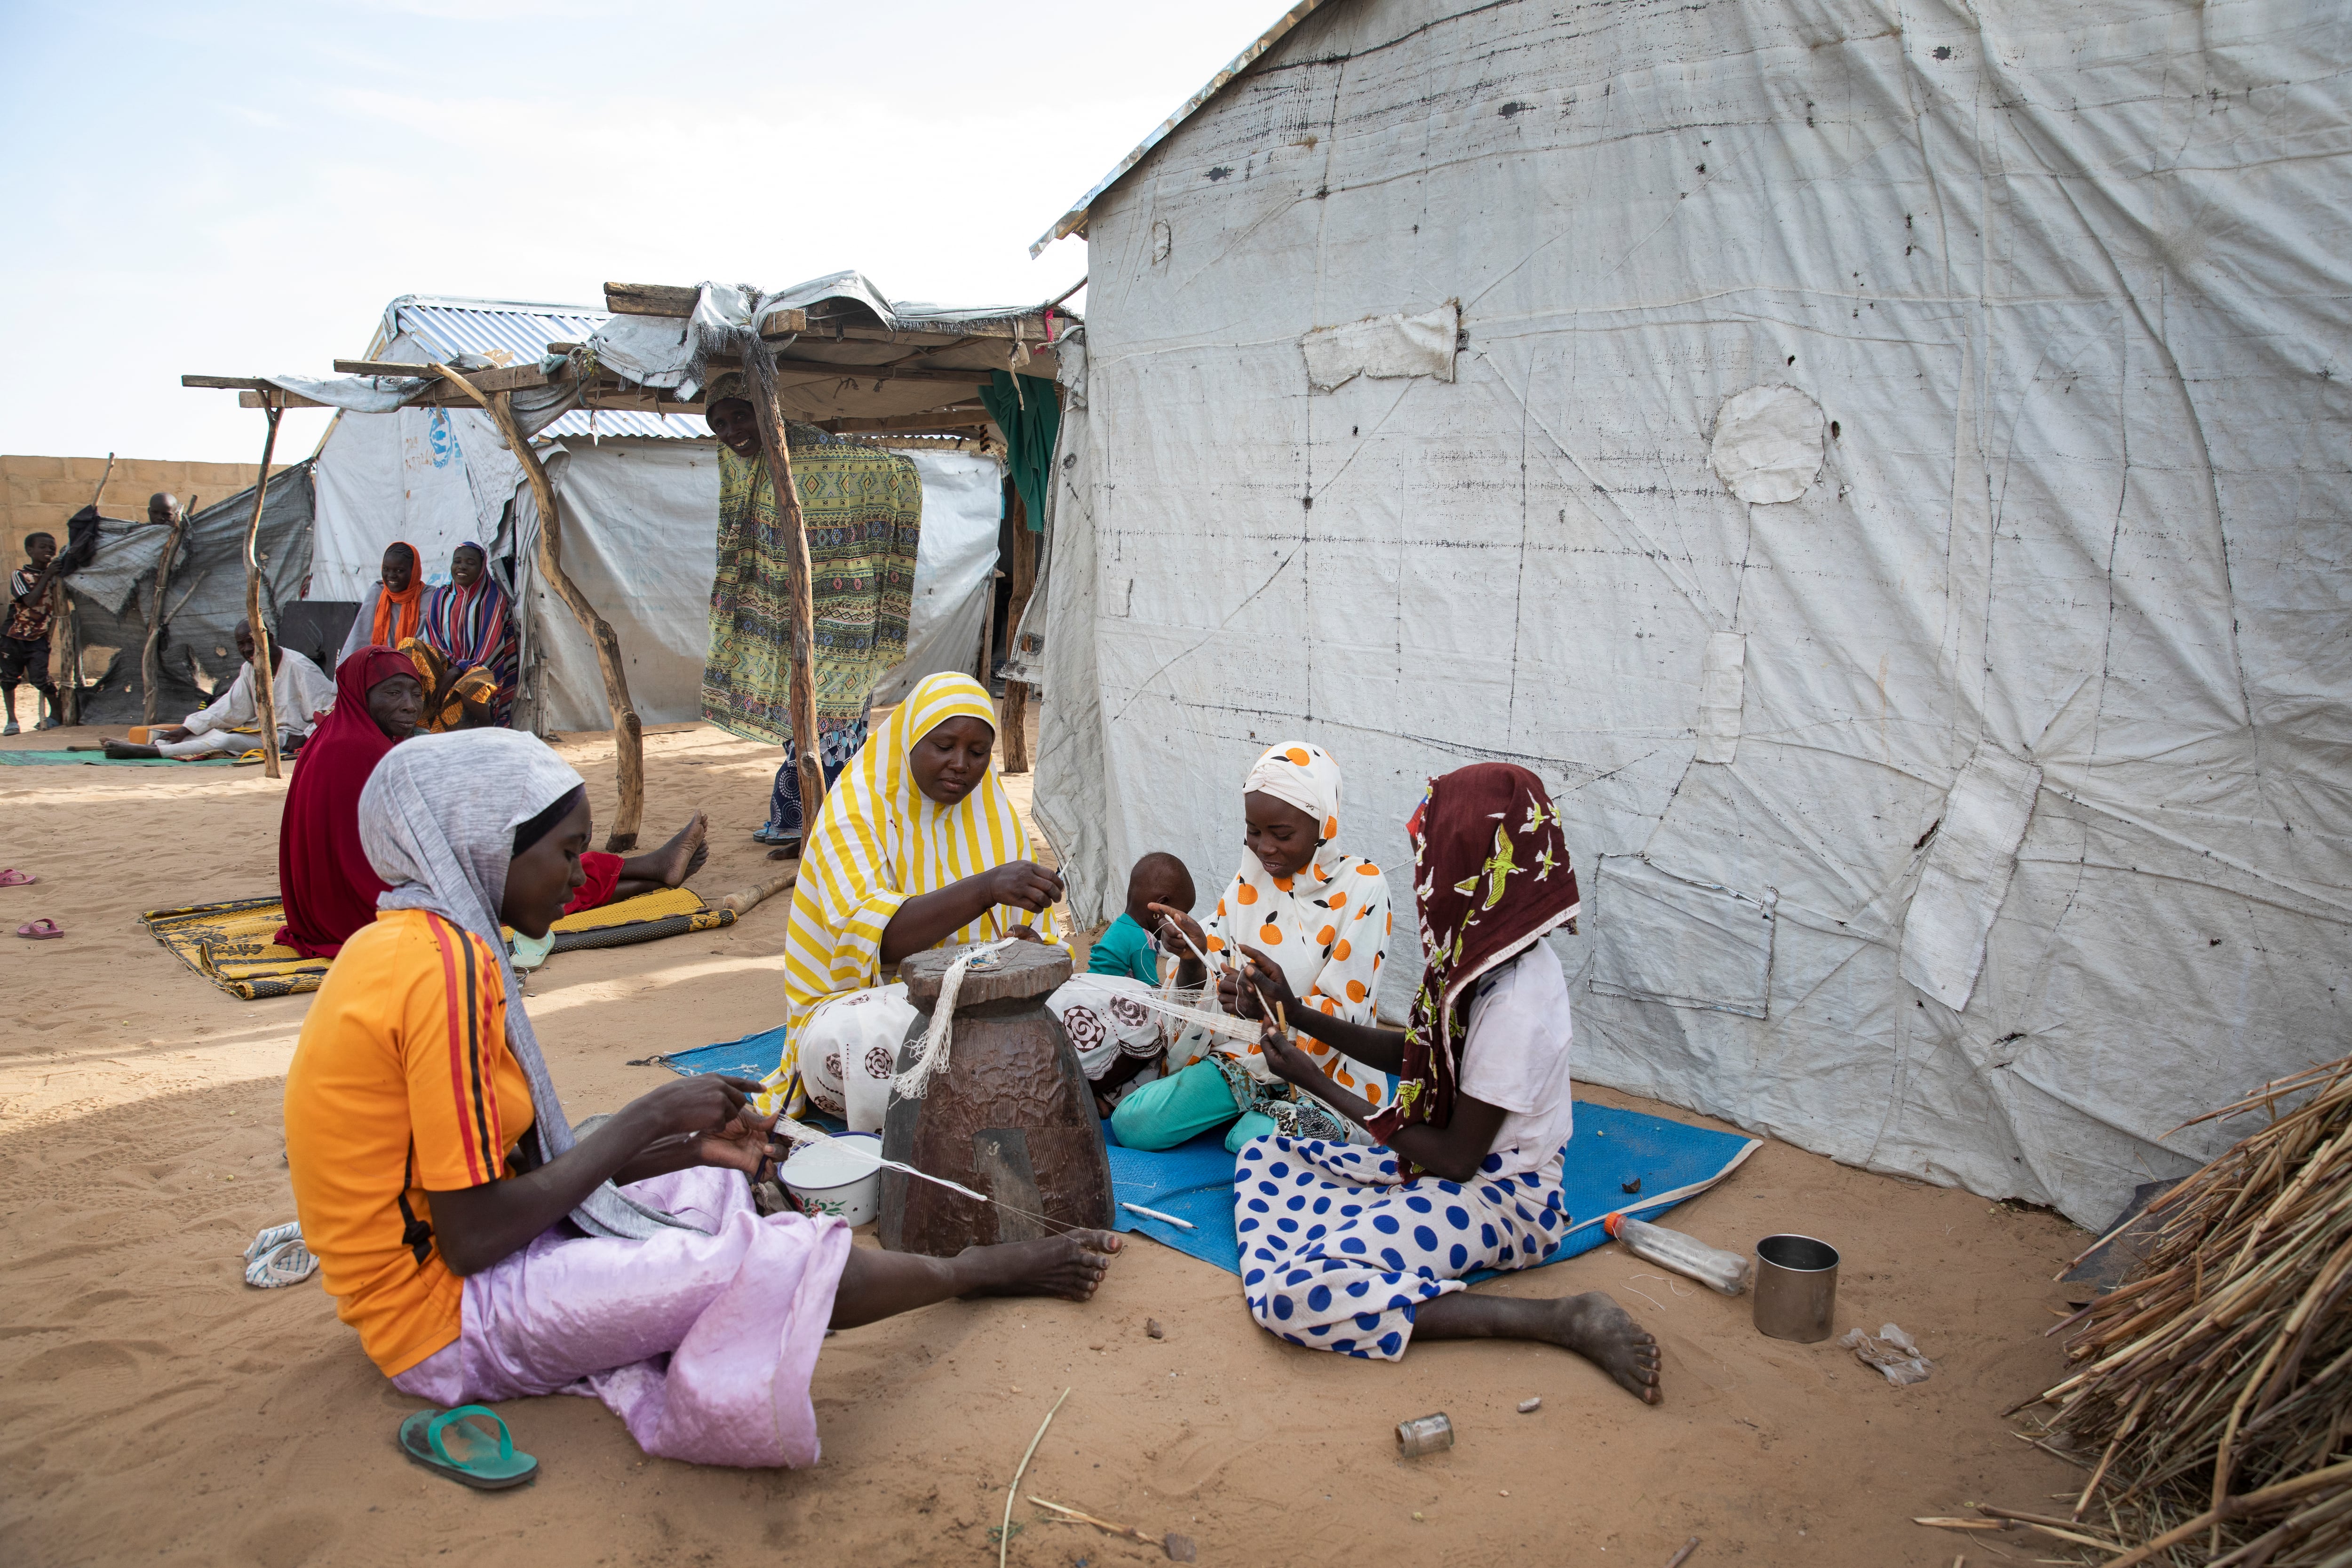 Roukaya, su madre y algunas vecinas tejen redes de pesca que después los chicos emplearán en el cercano lago Chad. La pesca era el motor económico de esta región, pero las acciones violentas de Boko Haram obligaron a huir a los habitantes de las islas.   